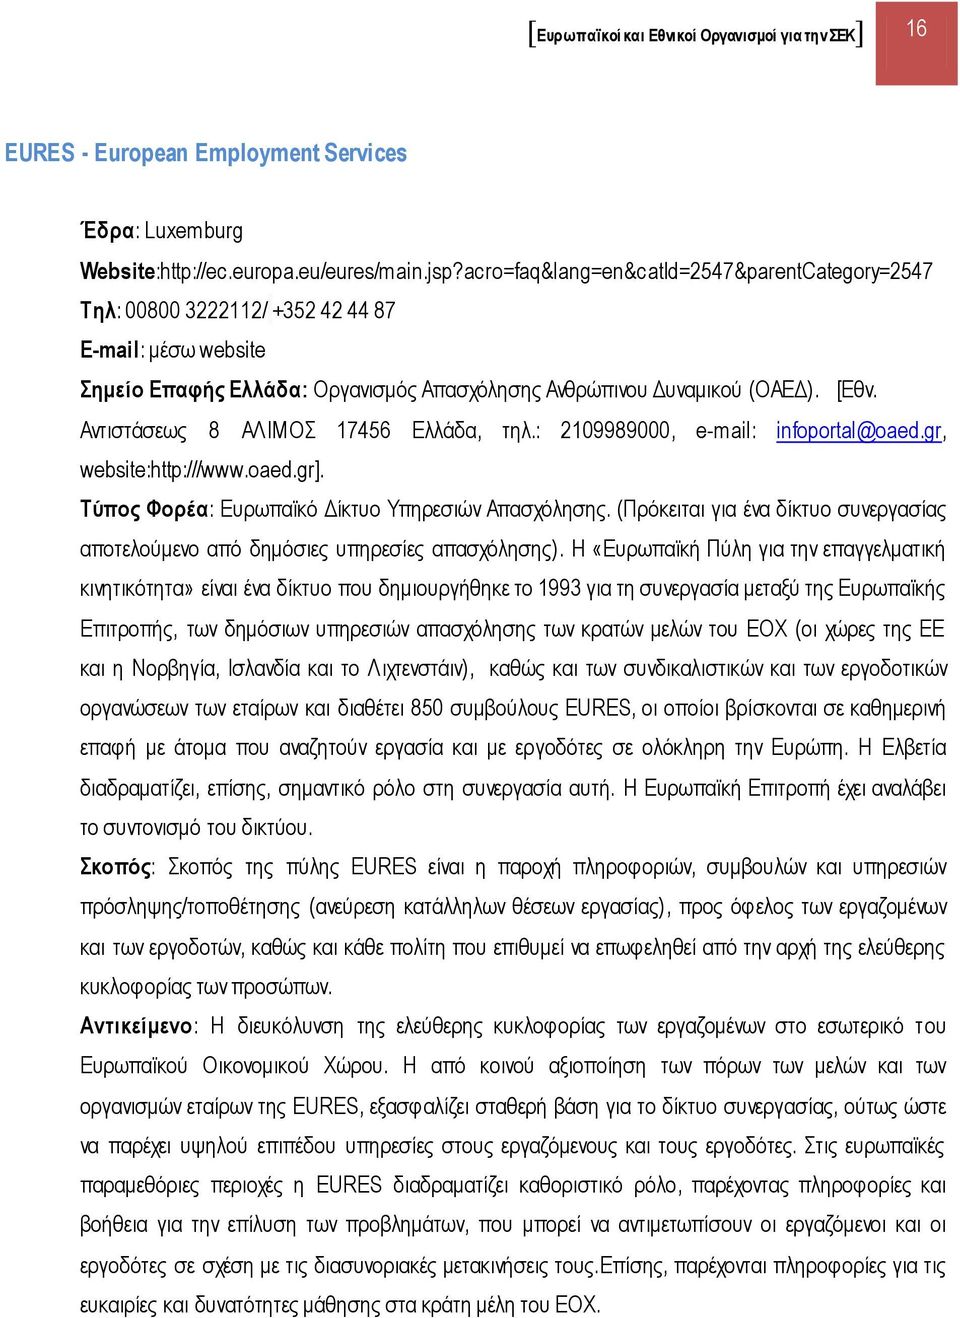 Αντιστάσεως 8 ΑΛΙΜΟΣ 17456 Ελλάδα, τηλ.: 2109989000, e-mail: infoportal@oaed.gr, website:http:///www.oaed.gr]. Τύπος Φορέα: Ευρωπαϊκό Δίκτυο Υπηρεσιών Απασχόλησης.